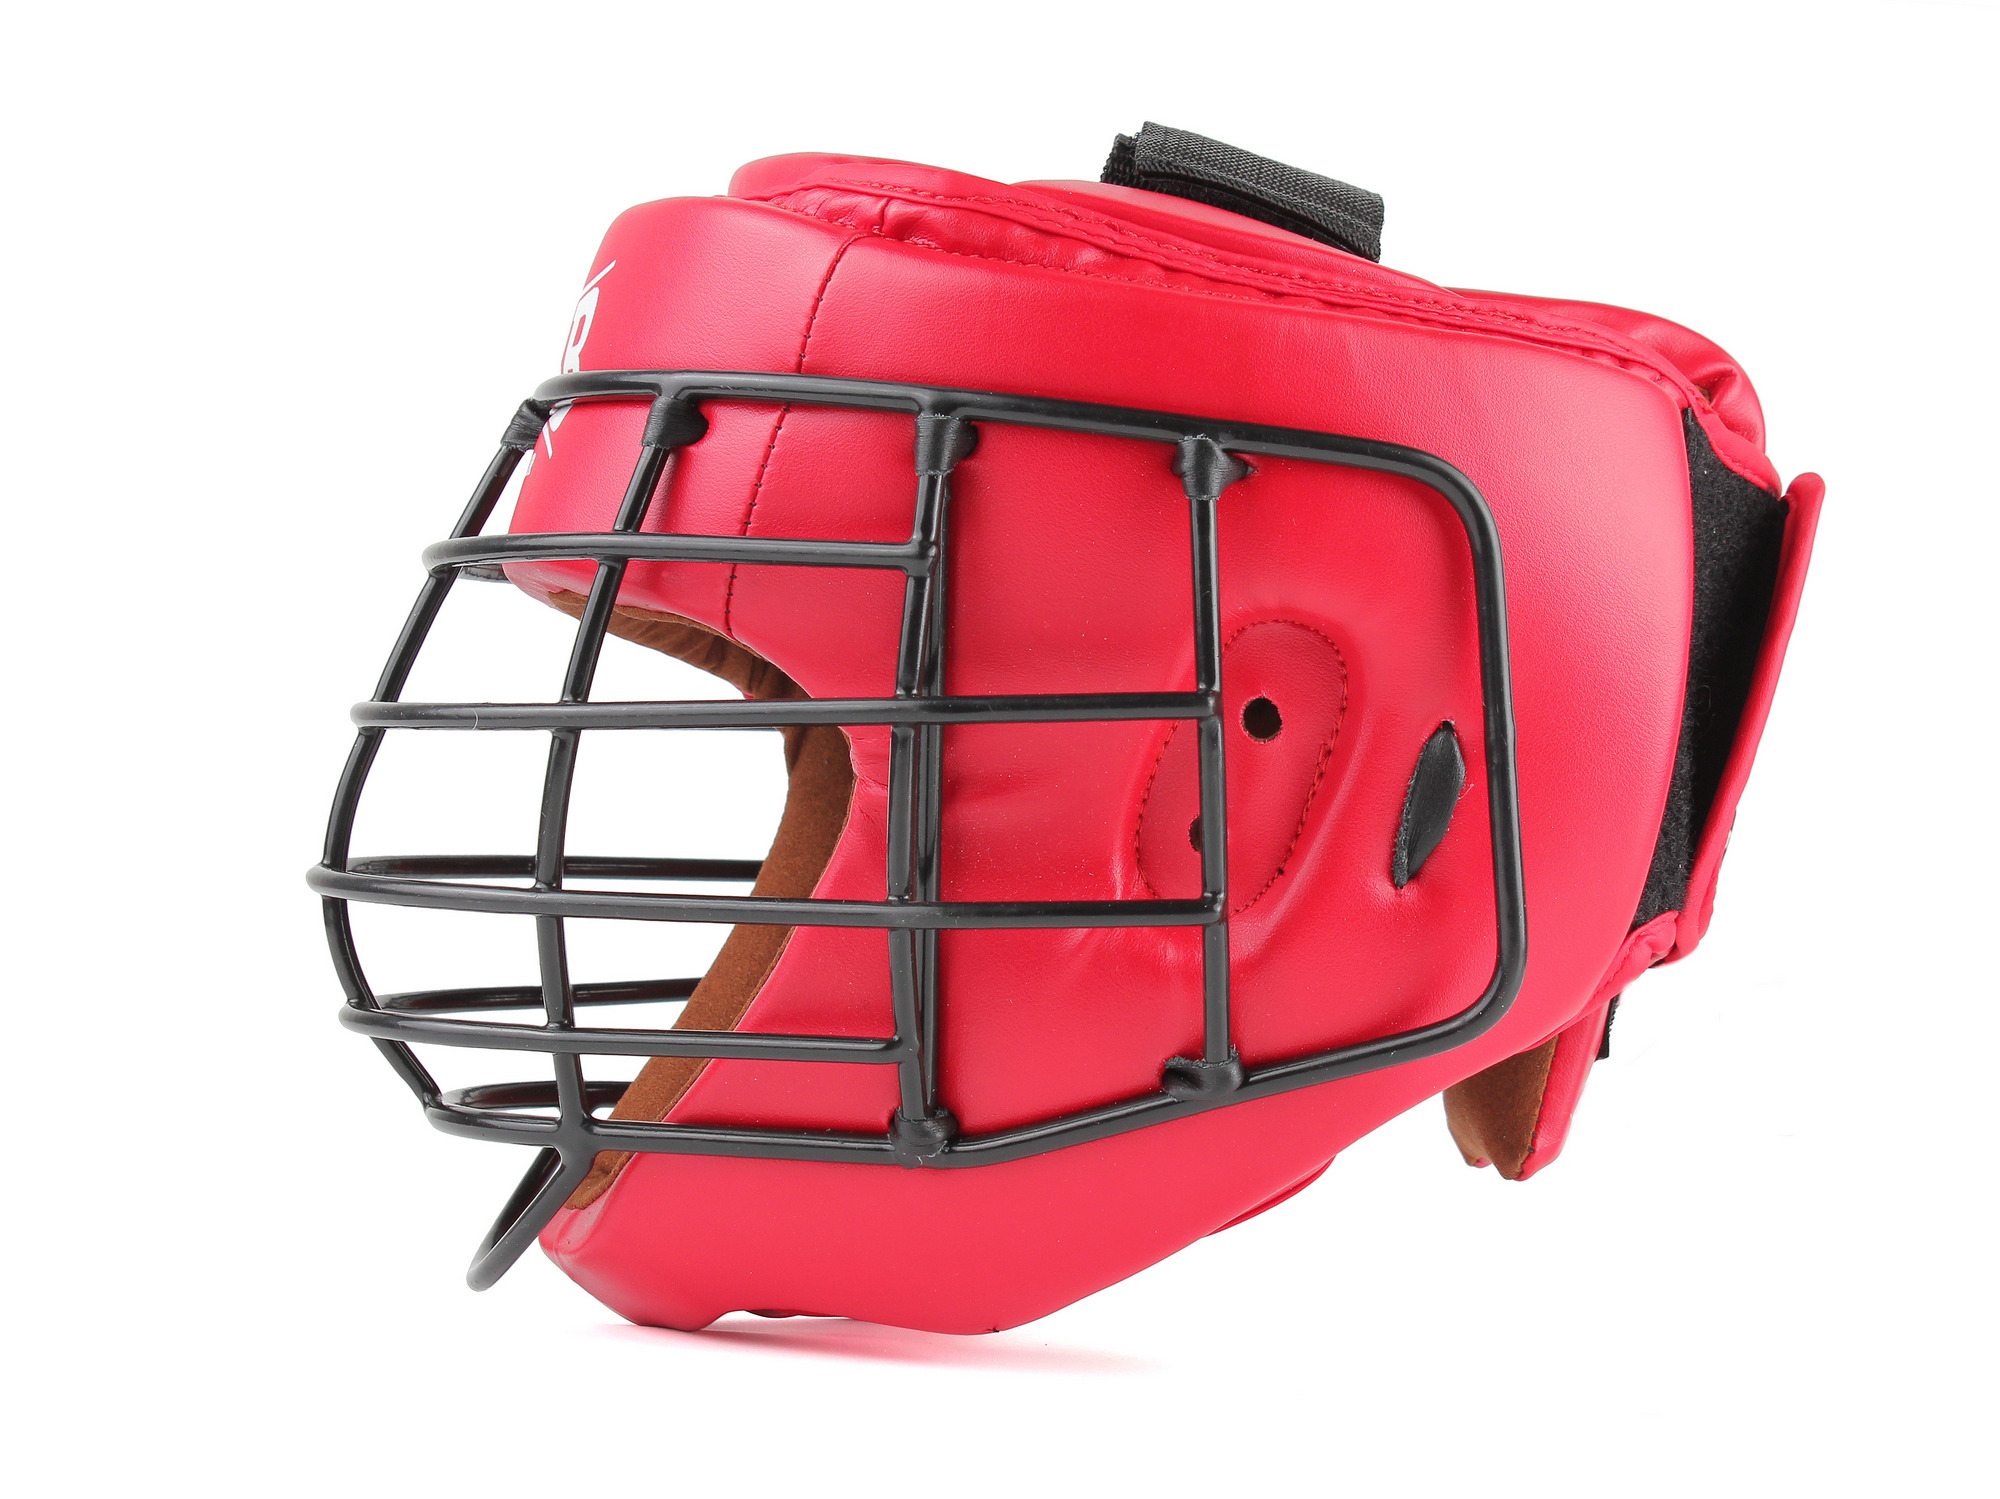 Шлем для рукопашного боя с защитной маской .(иск.кожа) Jabb JE-6012, красный 2000_1499